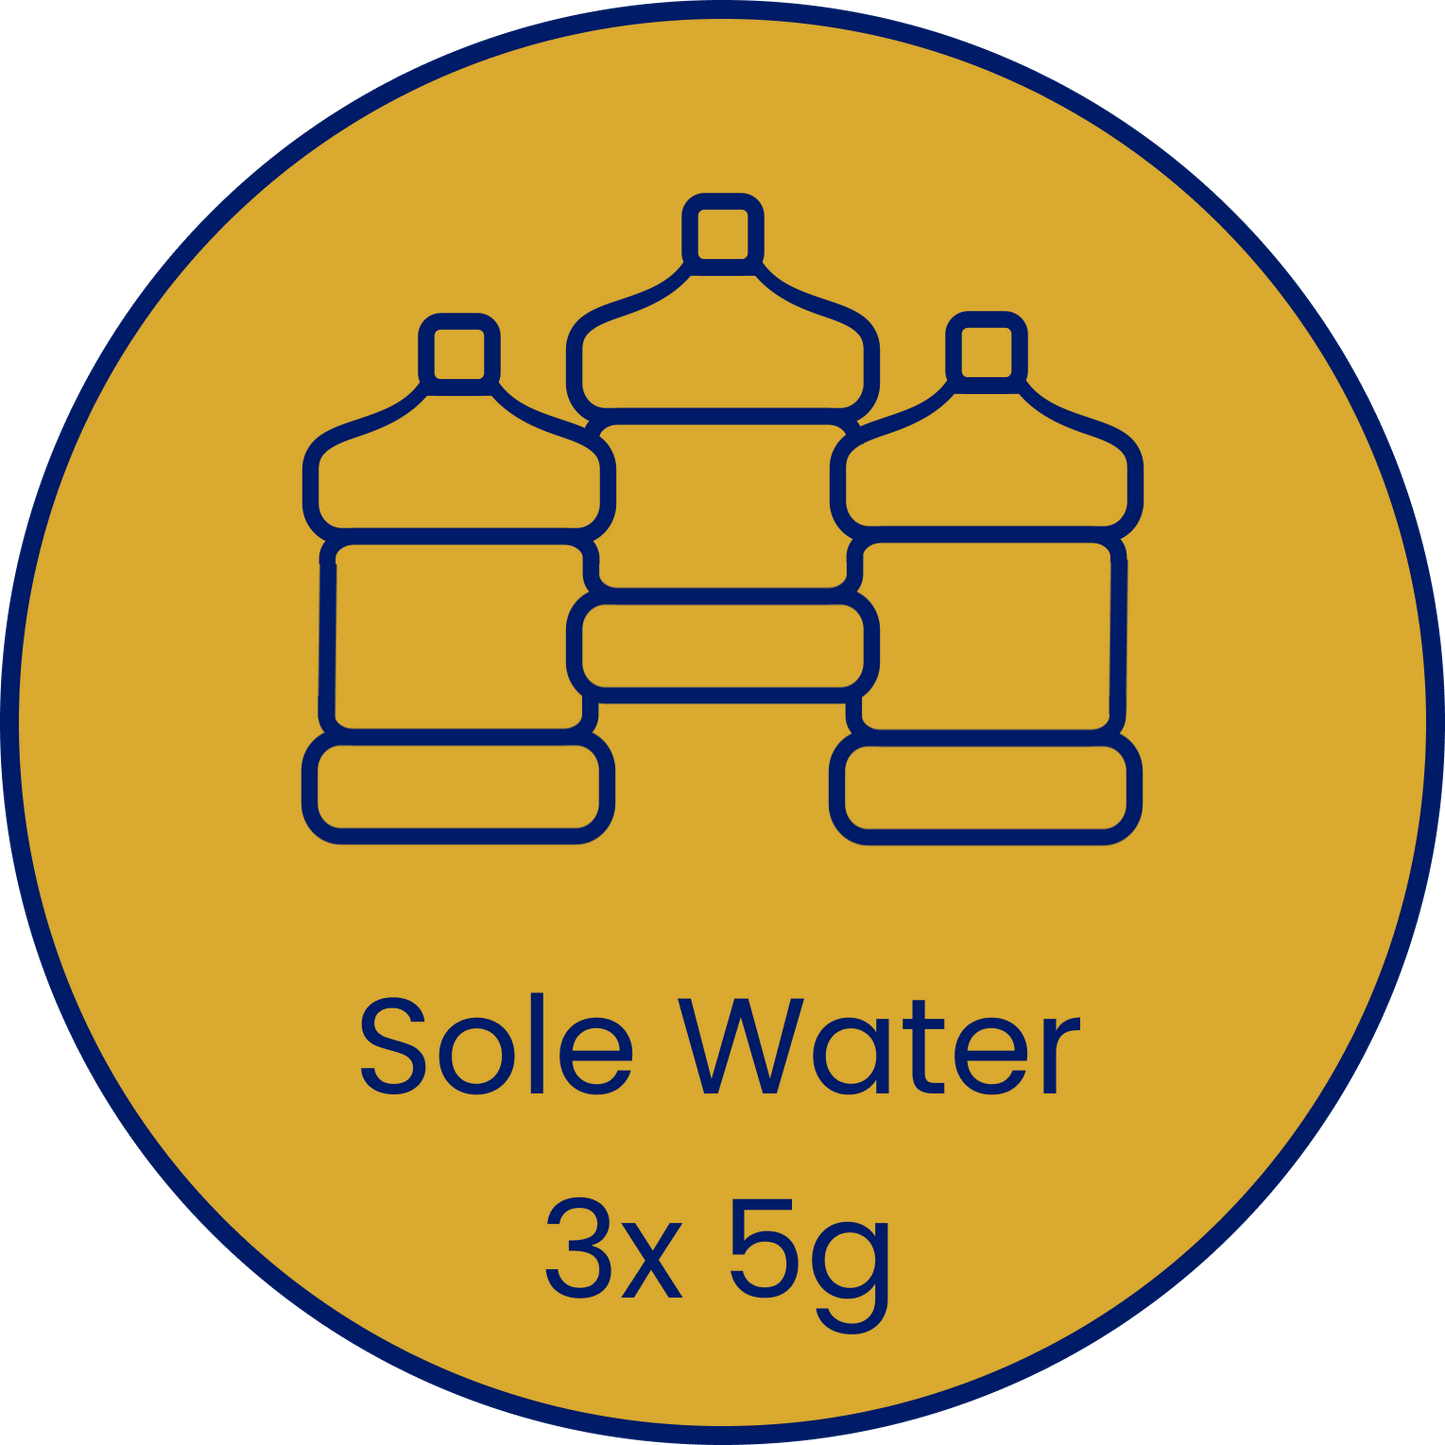 3x 5g Sole Water (15g)